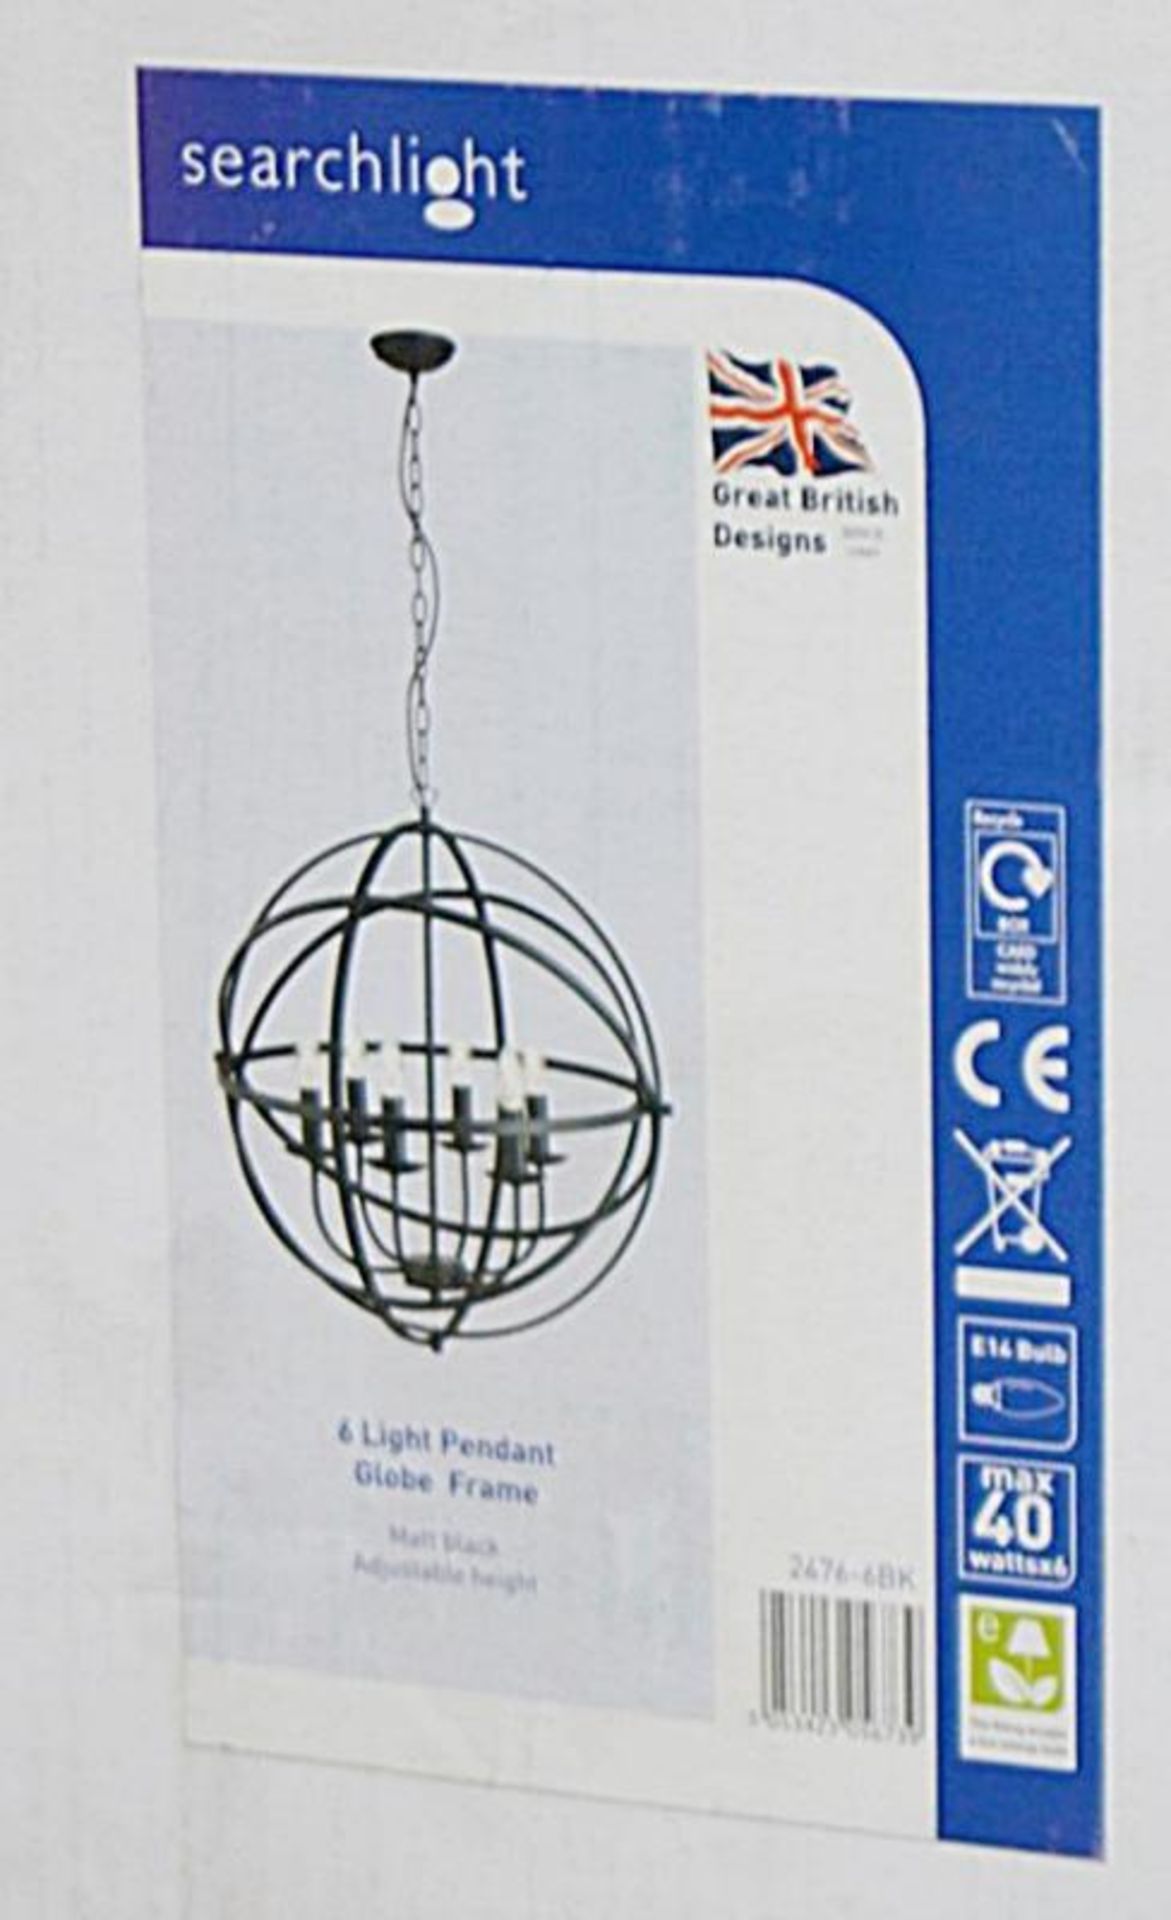 1 x Orbit Matt Black 6-Light Spherical Pendant Light - Brand New Boxed Stock - CL323 - Ref: 2476-6BK